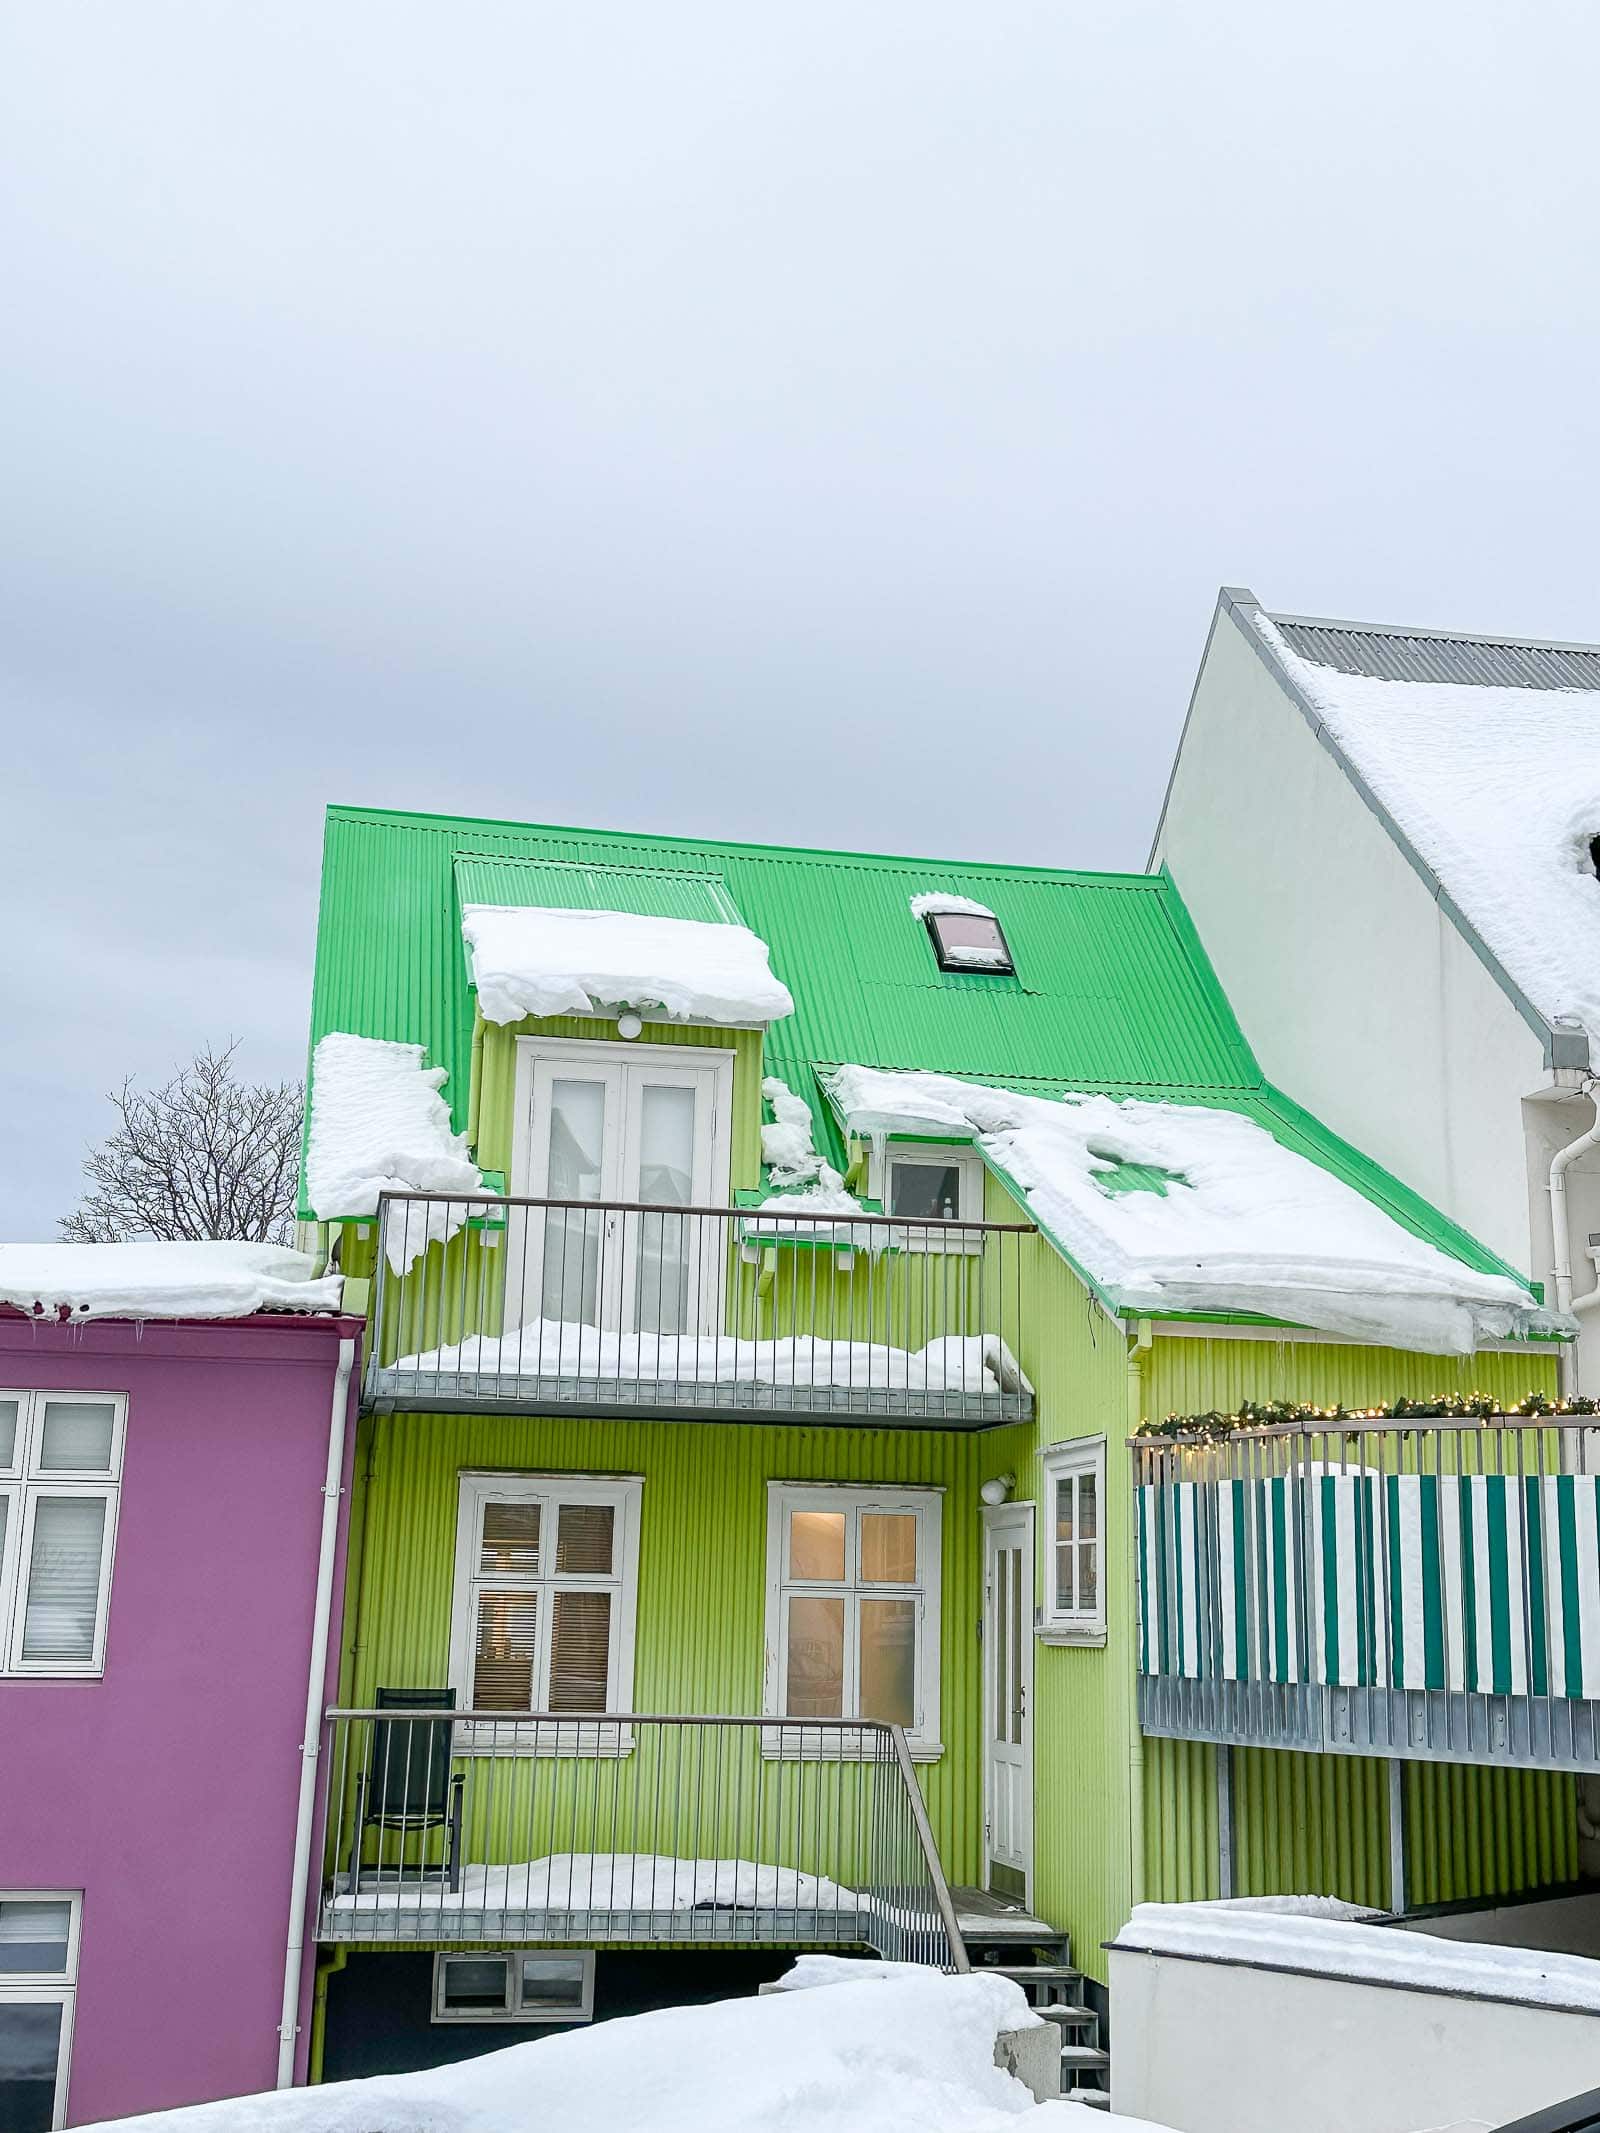 colorful buildings in reykjavik iceland